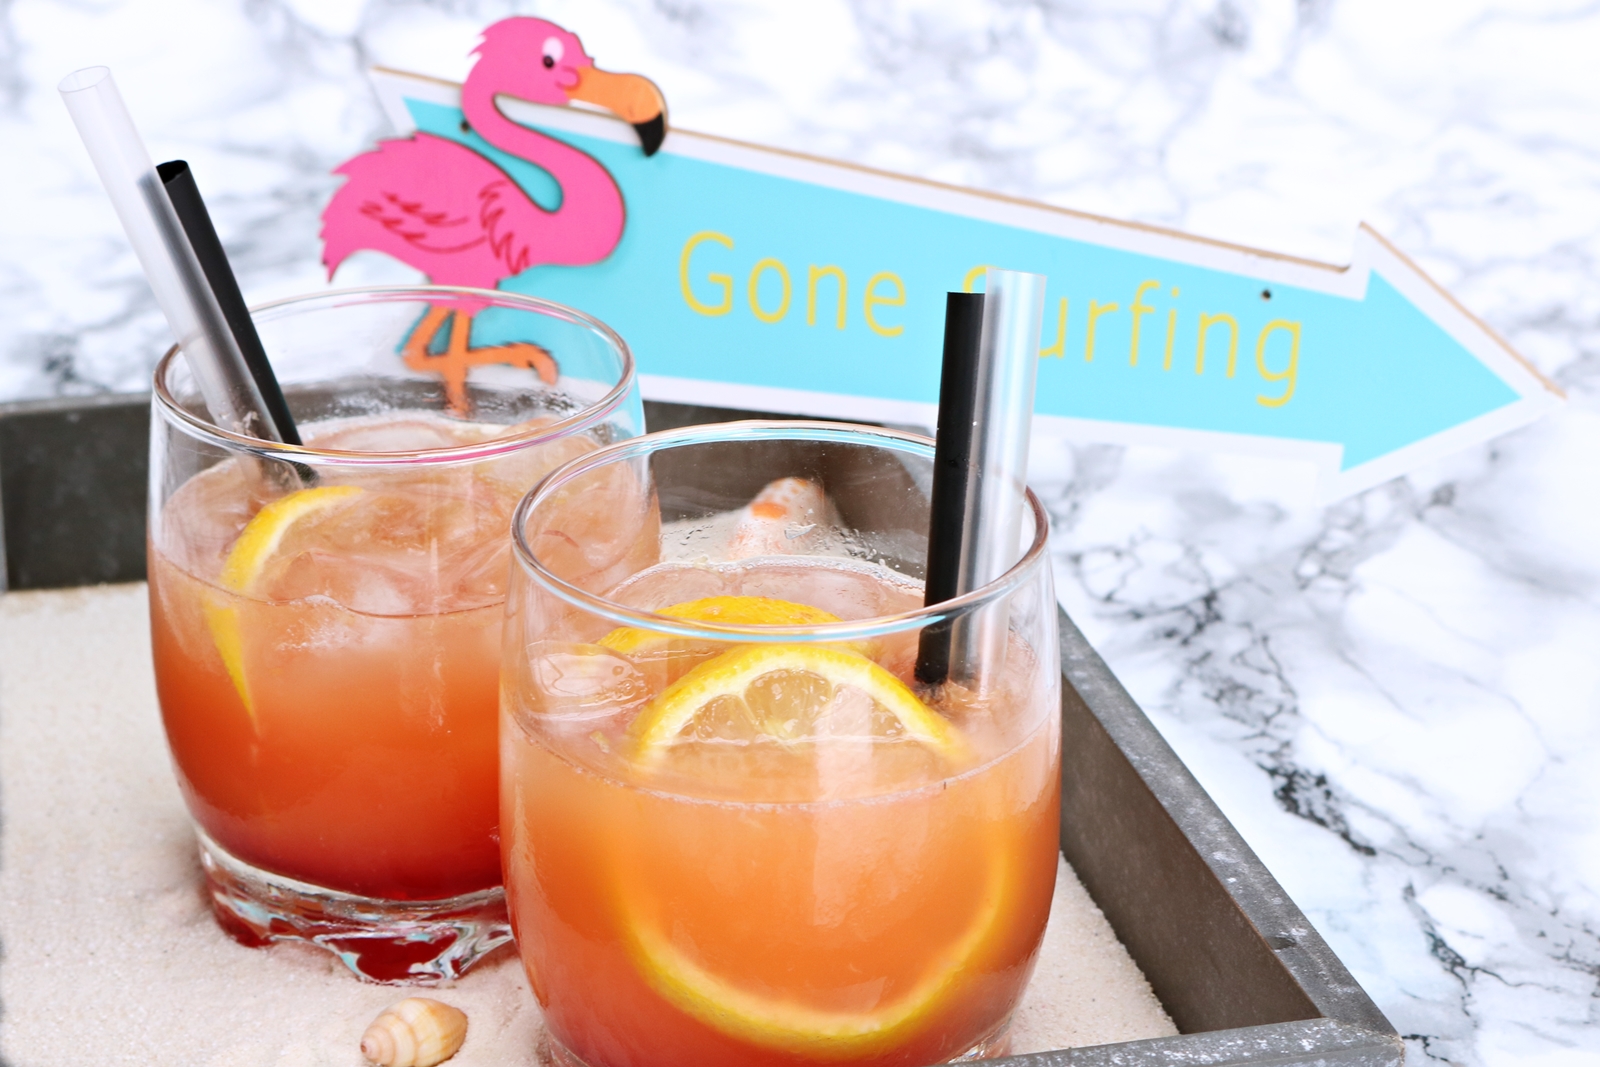 Flamingo Cocktail alkoholfrei - erfrischender exotischer Cocktail auch für Kinder geeignet - Rezept - Fashionladyloves by Tamara Wagner - Foodblog 